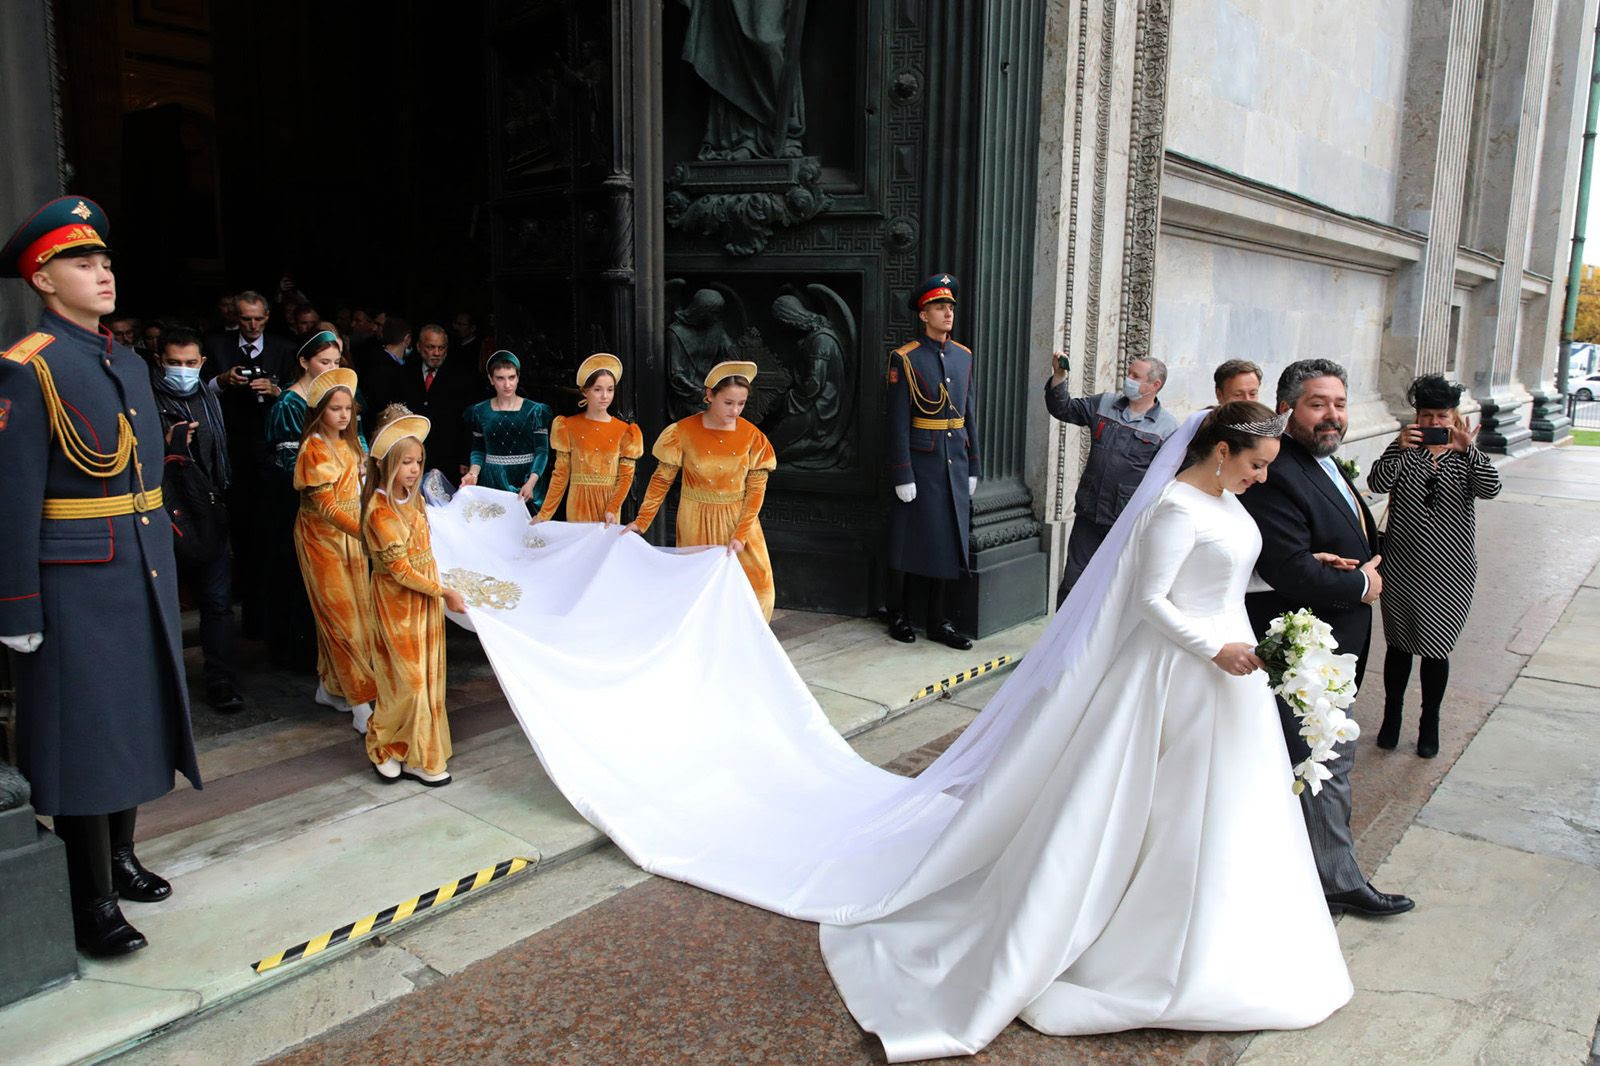 Свадьба Великого князя Георгия Михайловича и Виктории Романовны, урождённой Ребекки Беттарини